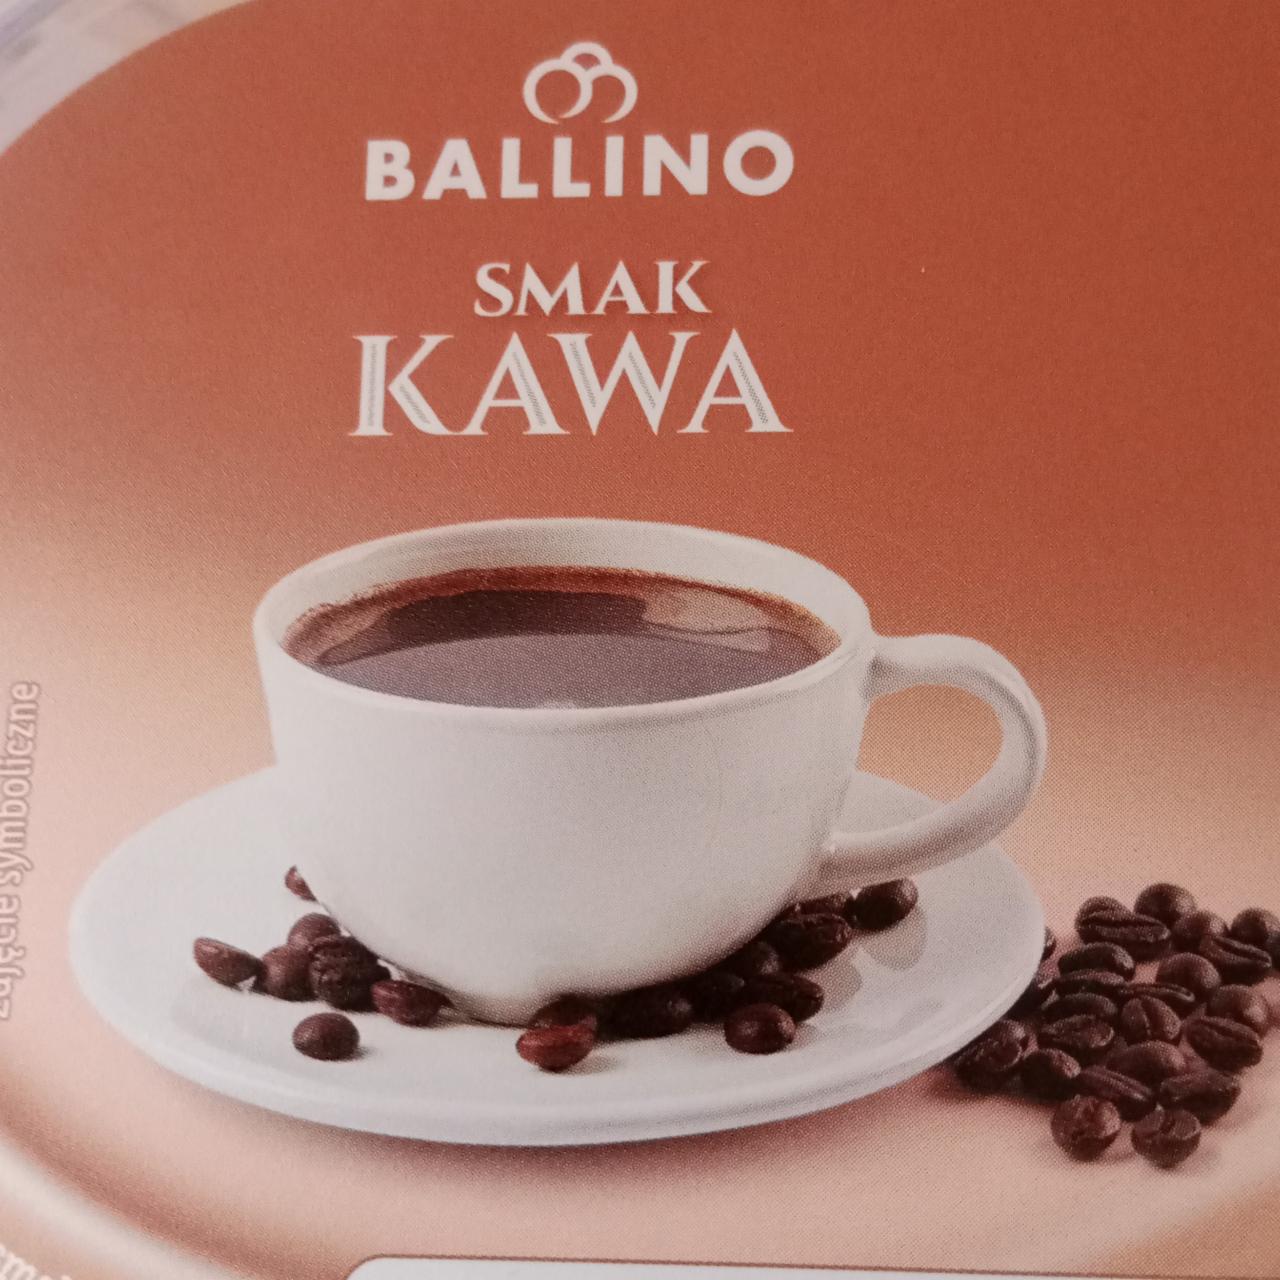 Zdjęcia - Smak kawa Ballino